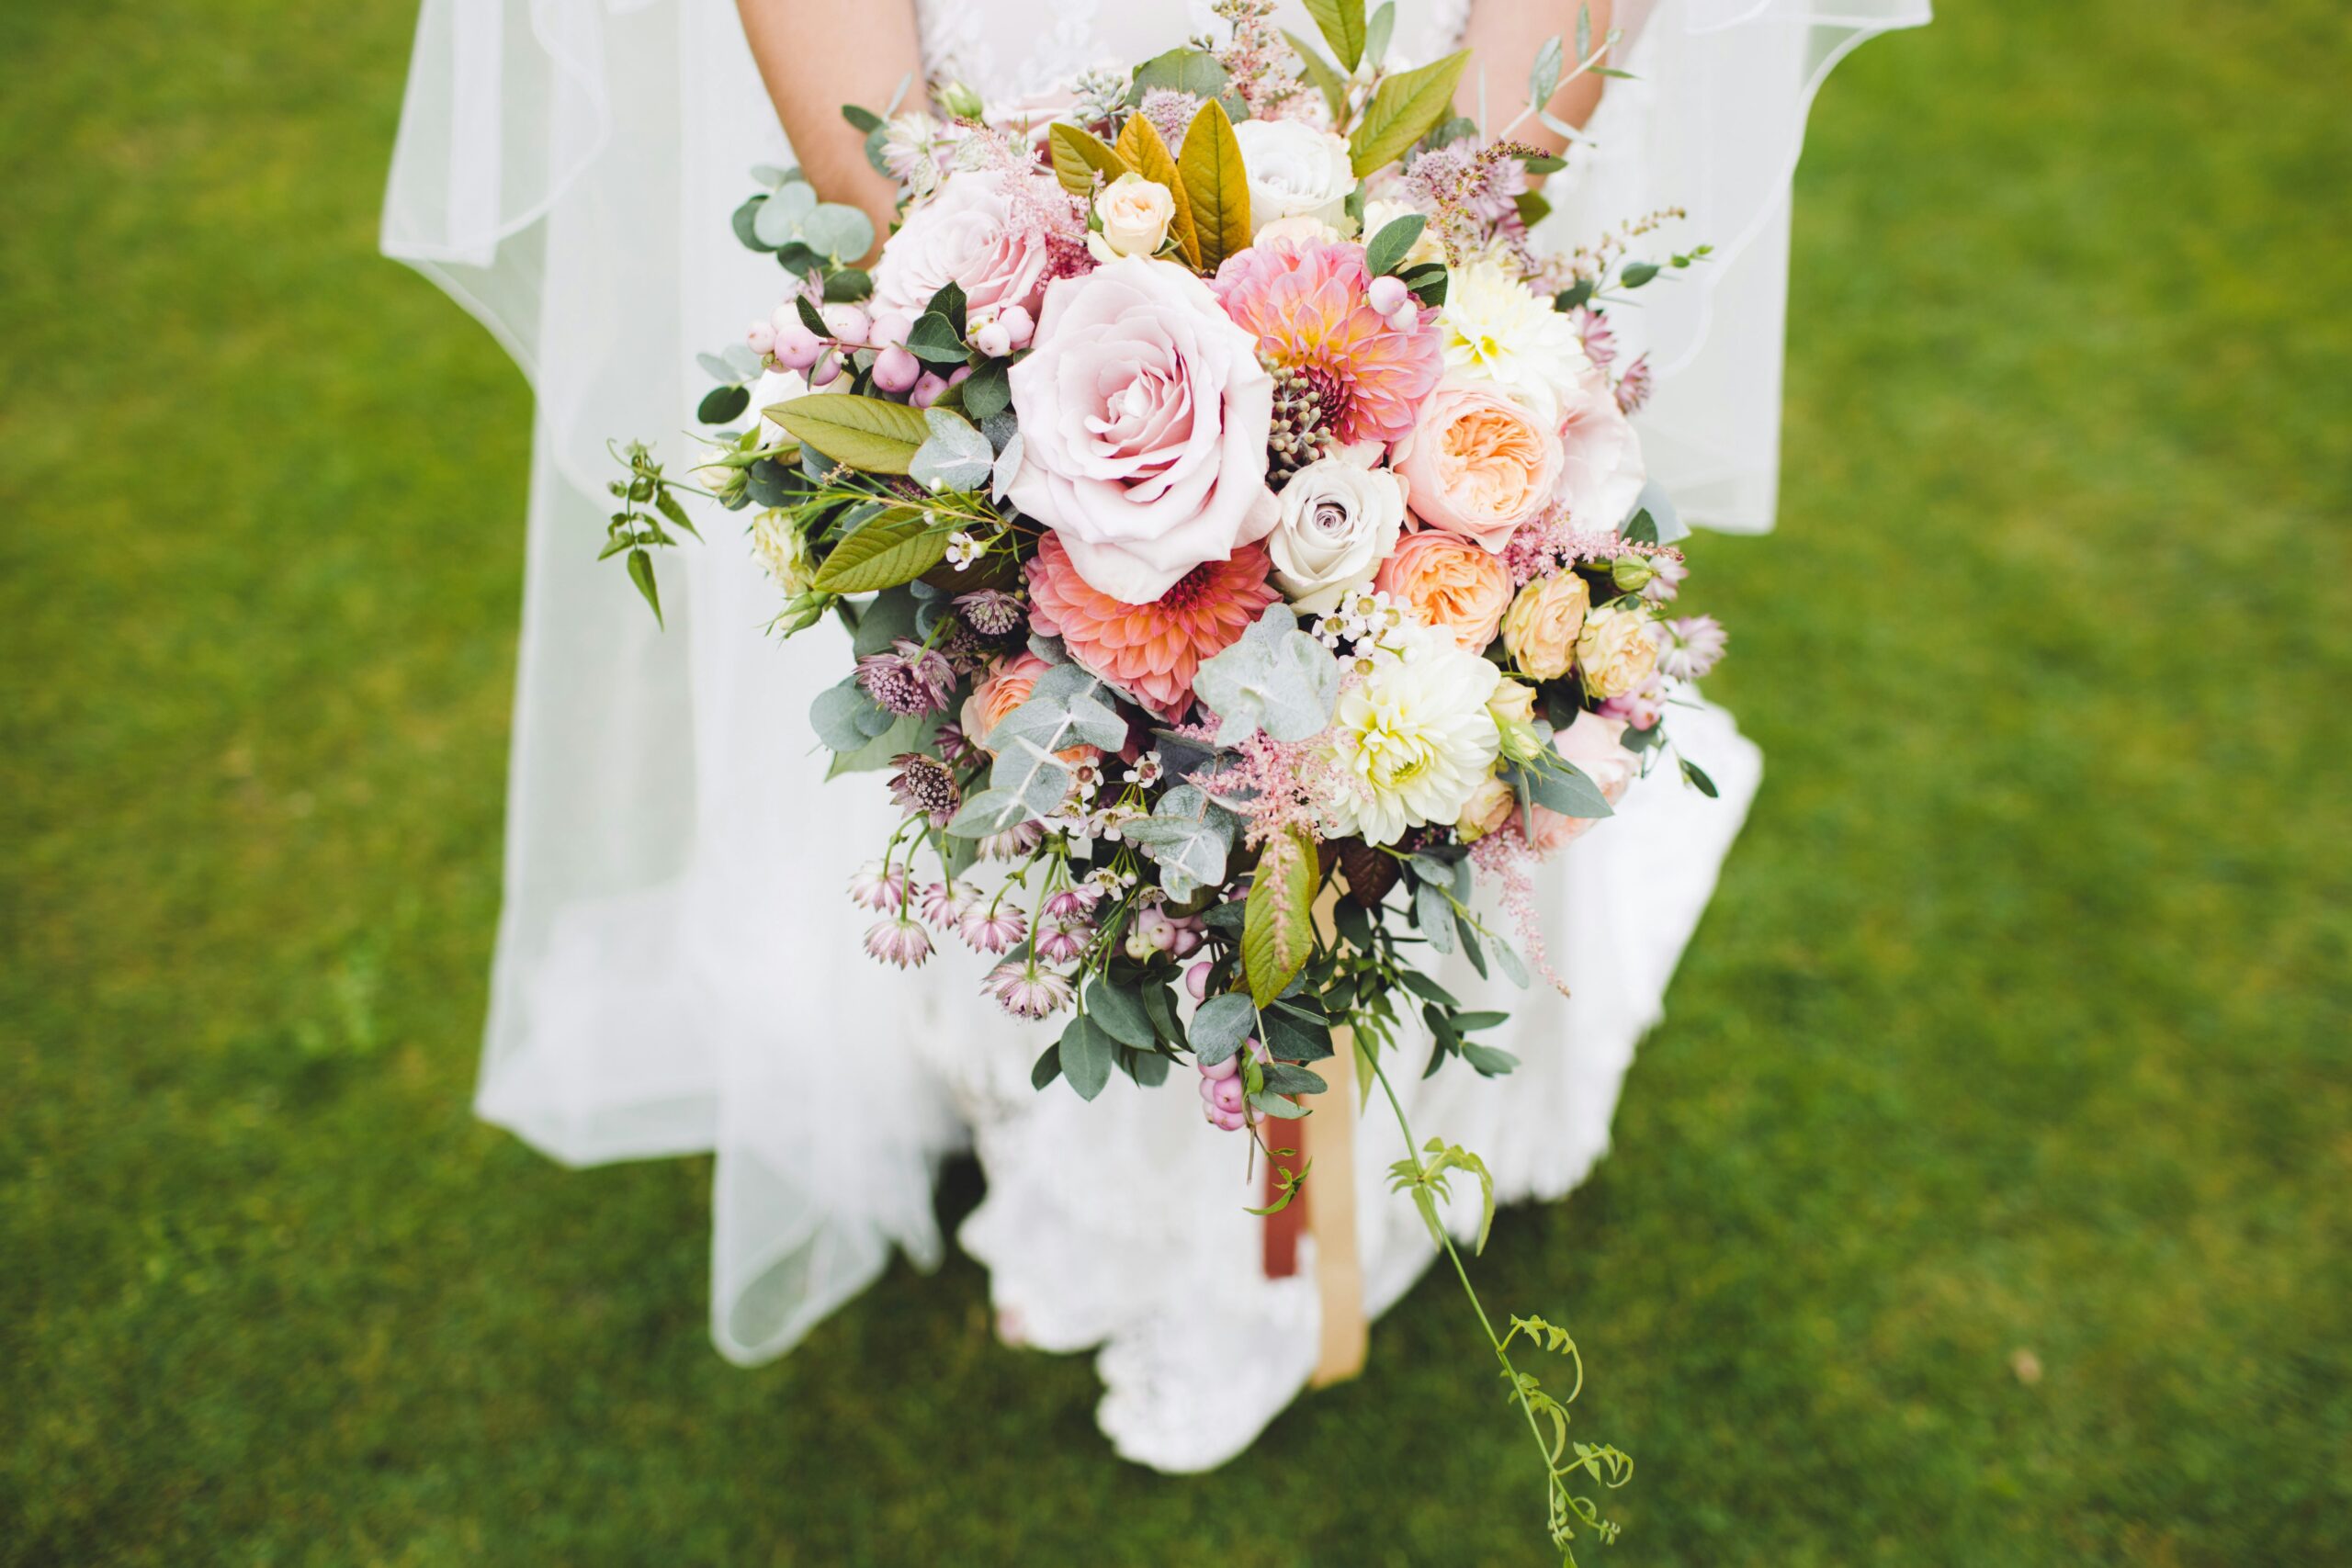 A person holding a brides bouquet.